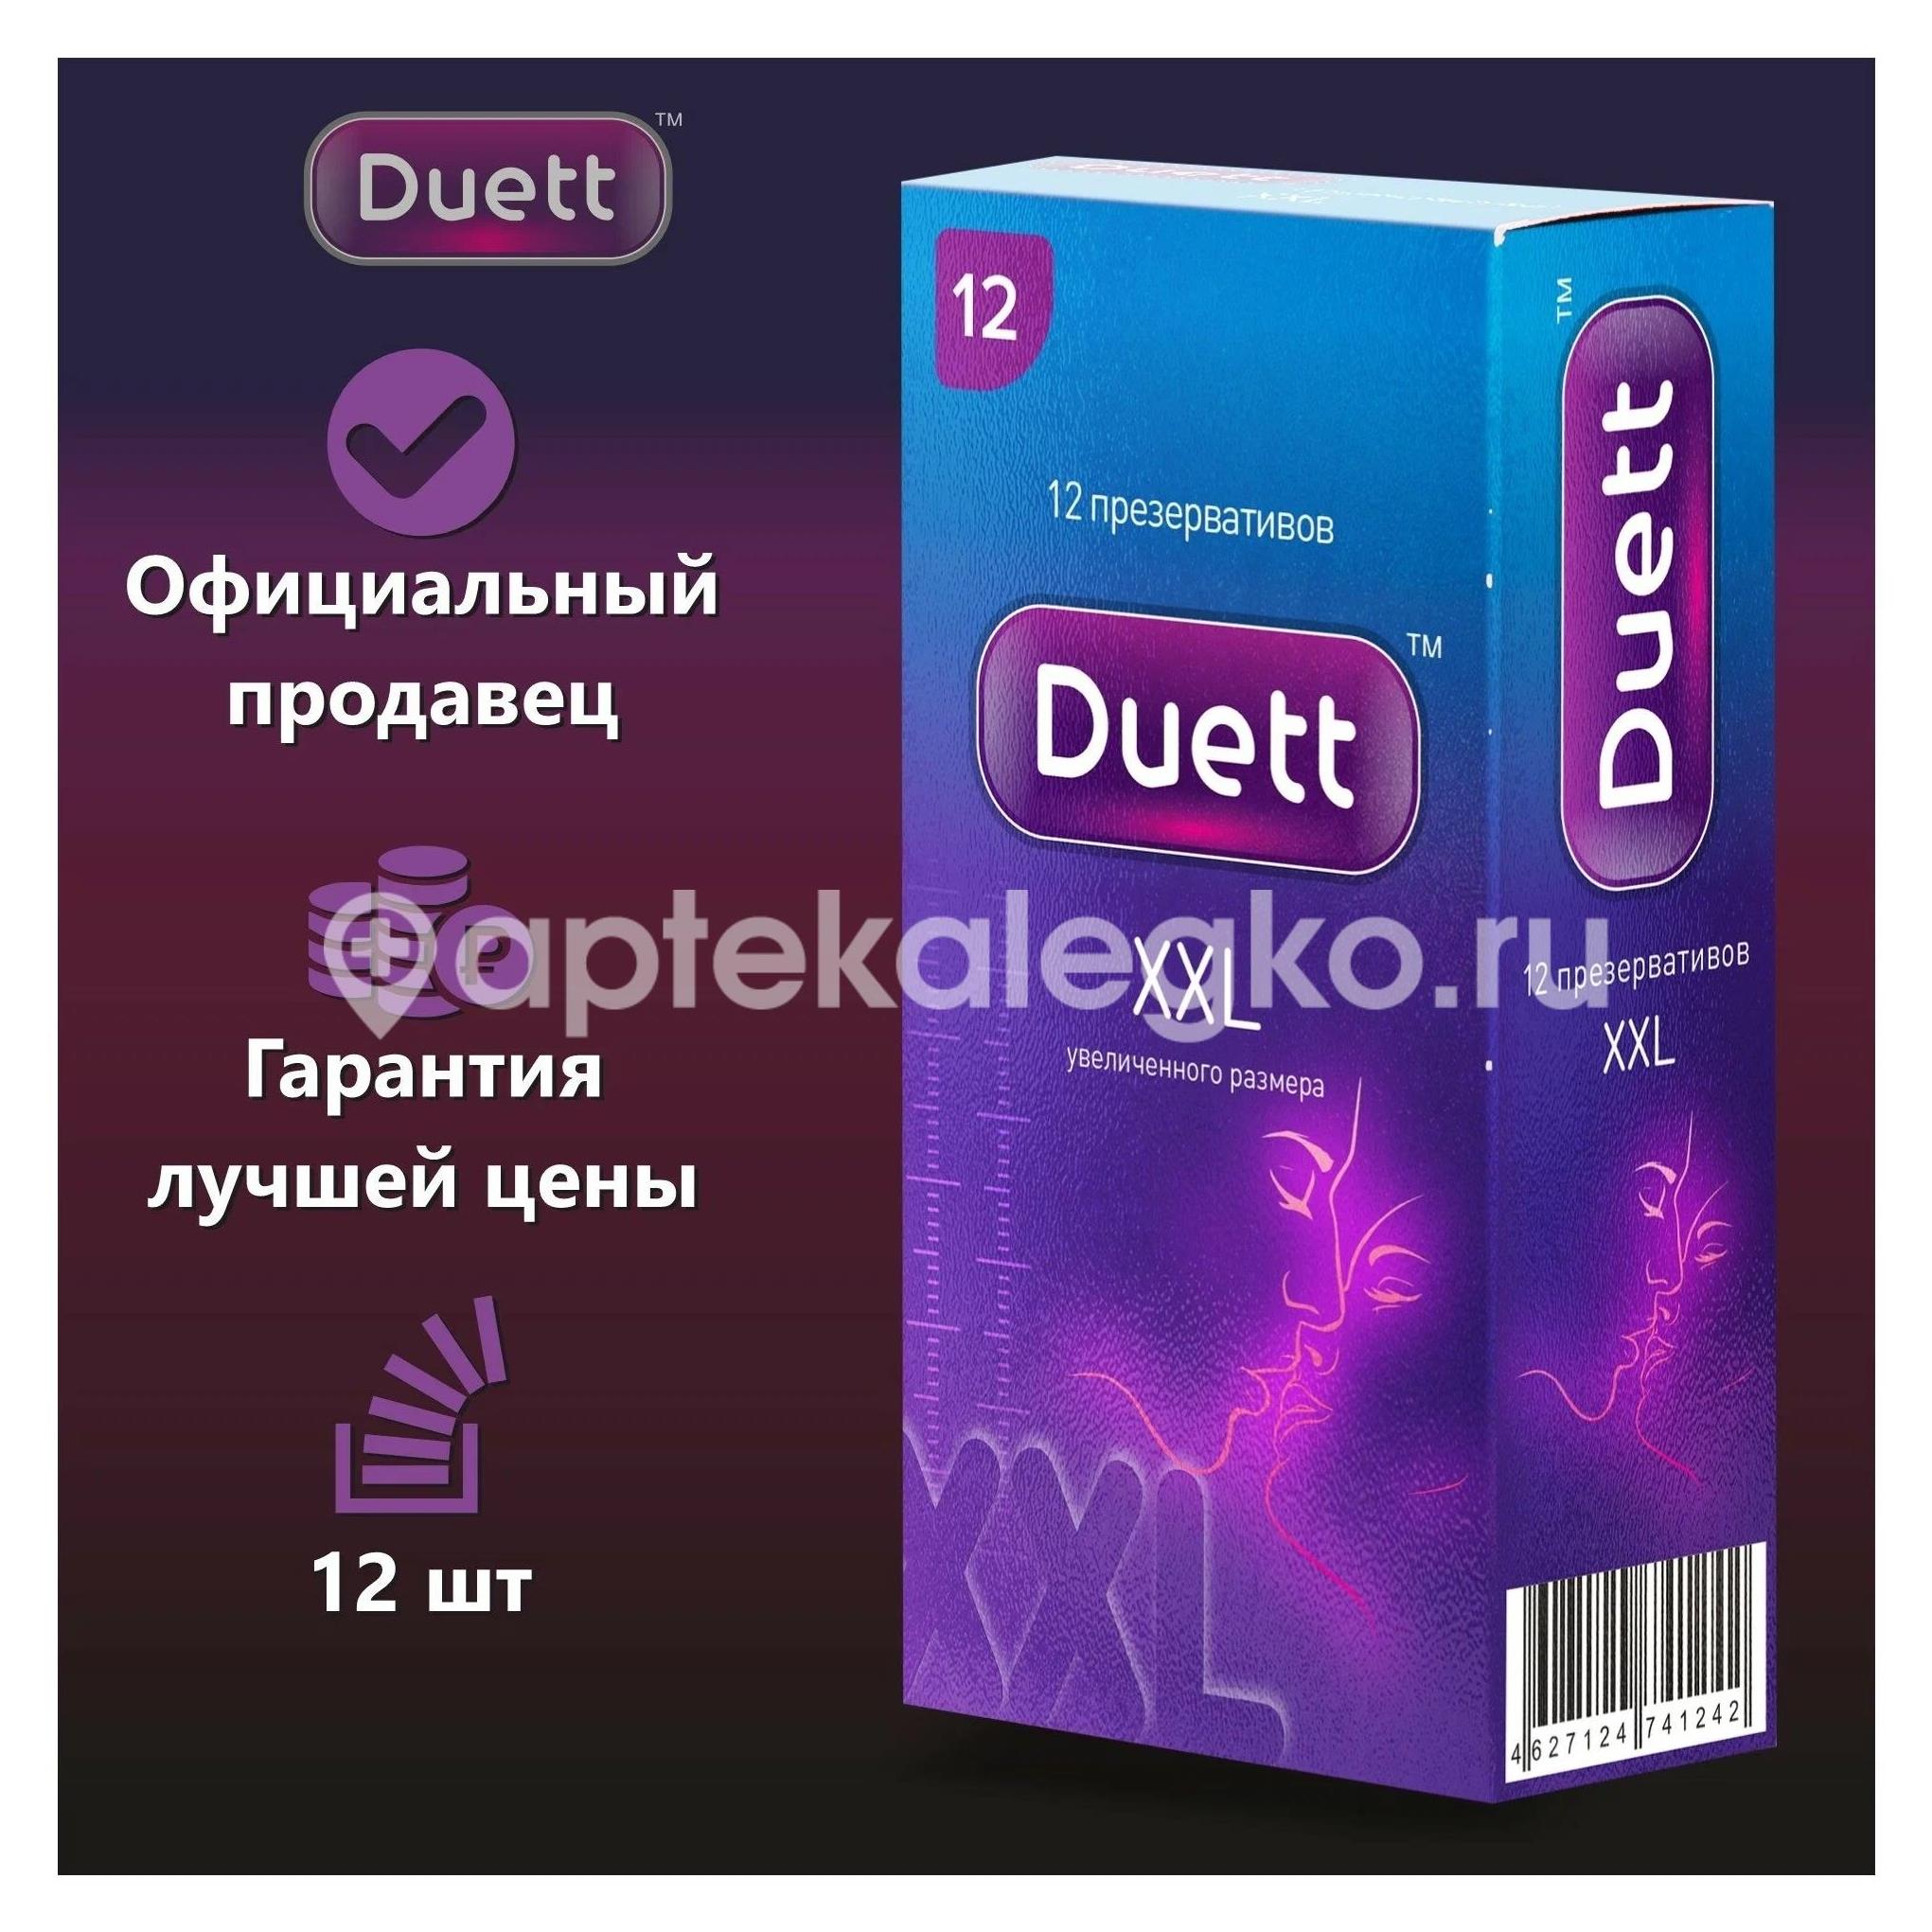 Duett xxl презервативы увеличенного размера 12 шт. [duett] - 2